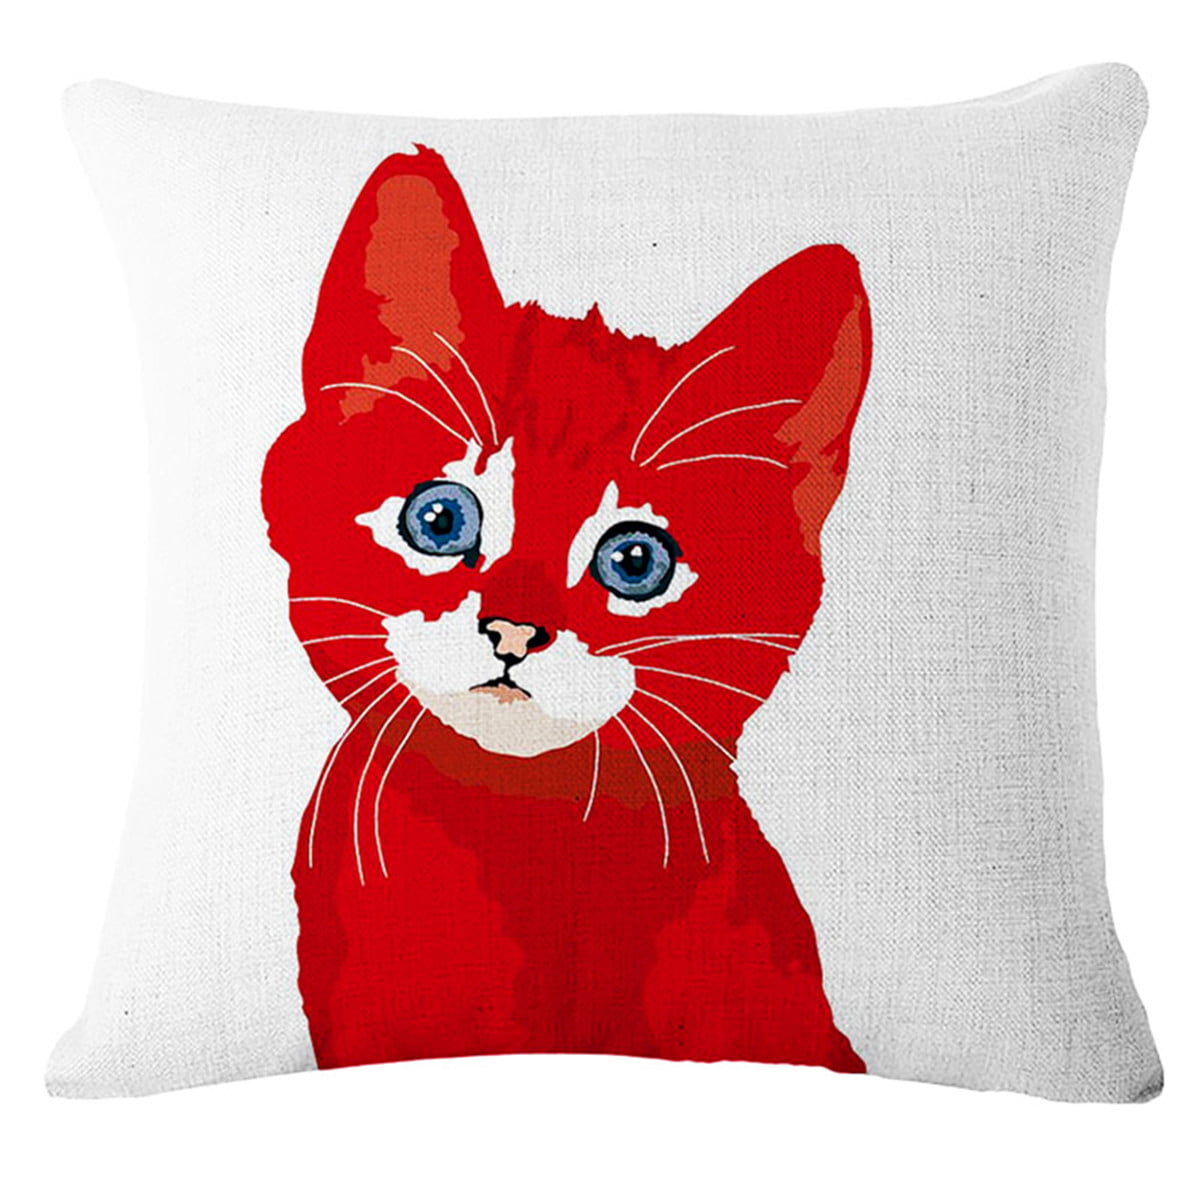 Colorful Art Animal Cotton Linen Throw Pillow Case Cushion Cover Sofa Car 18"